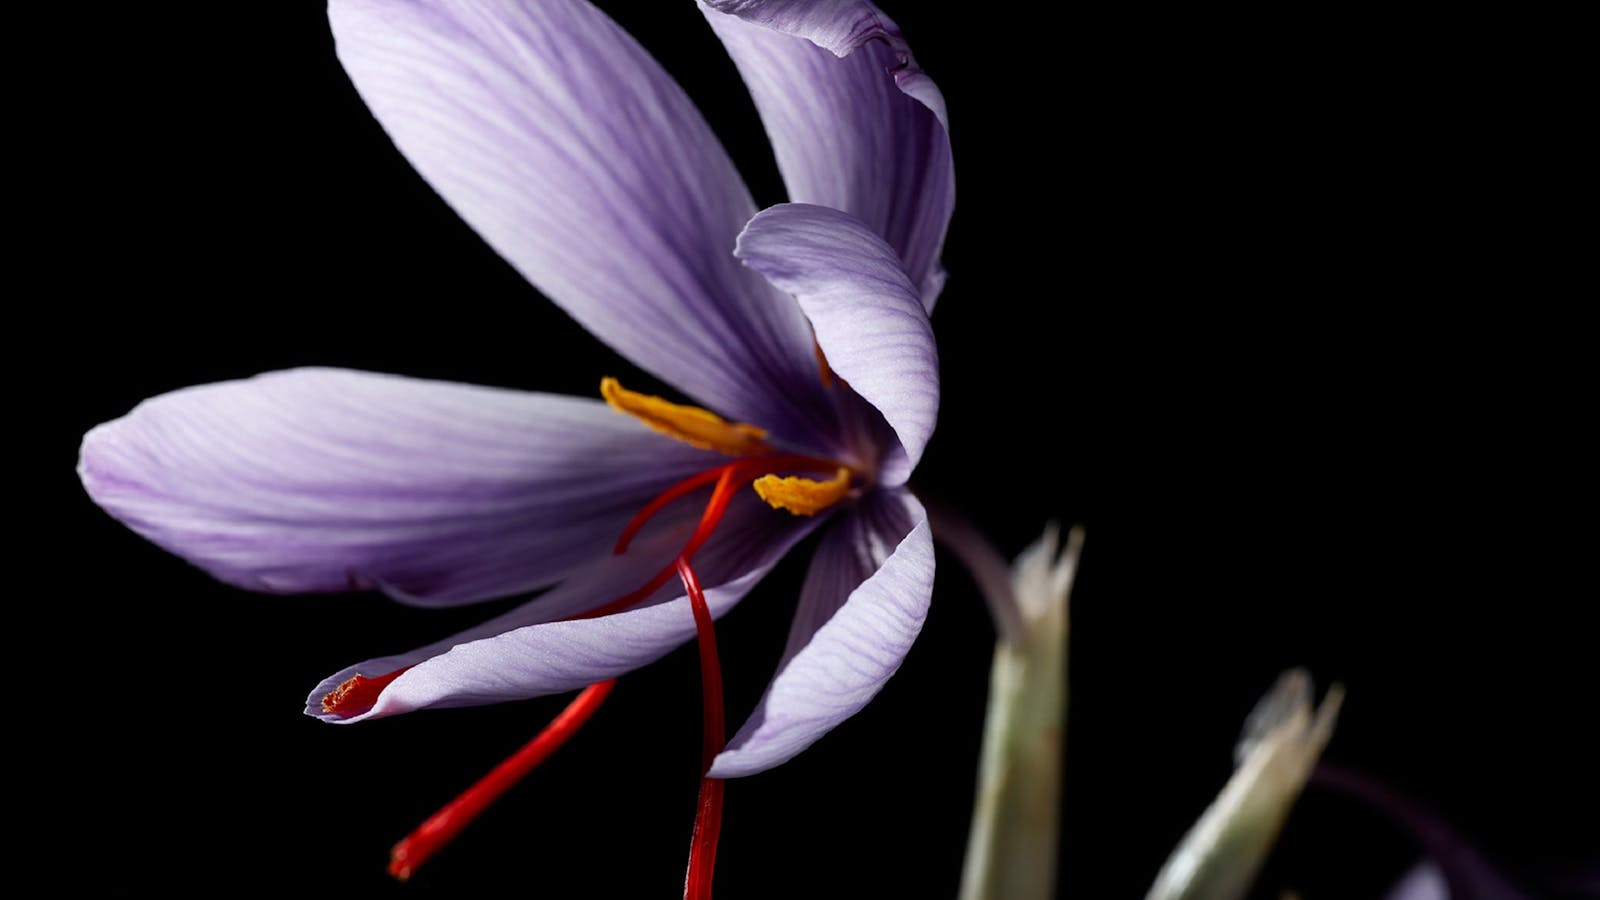 Flowering saffron bulb